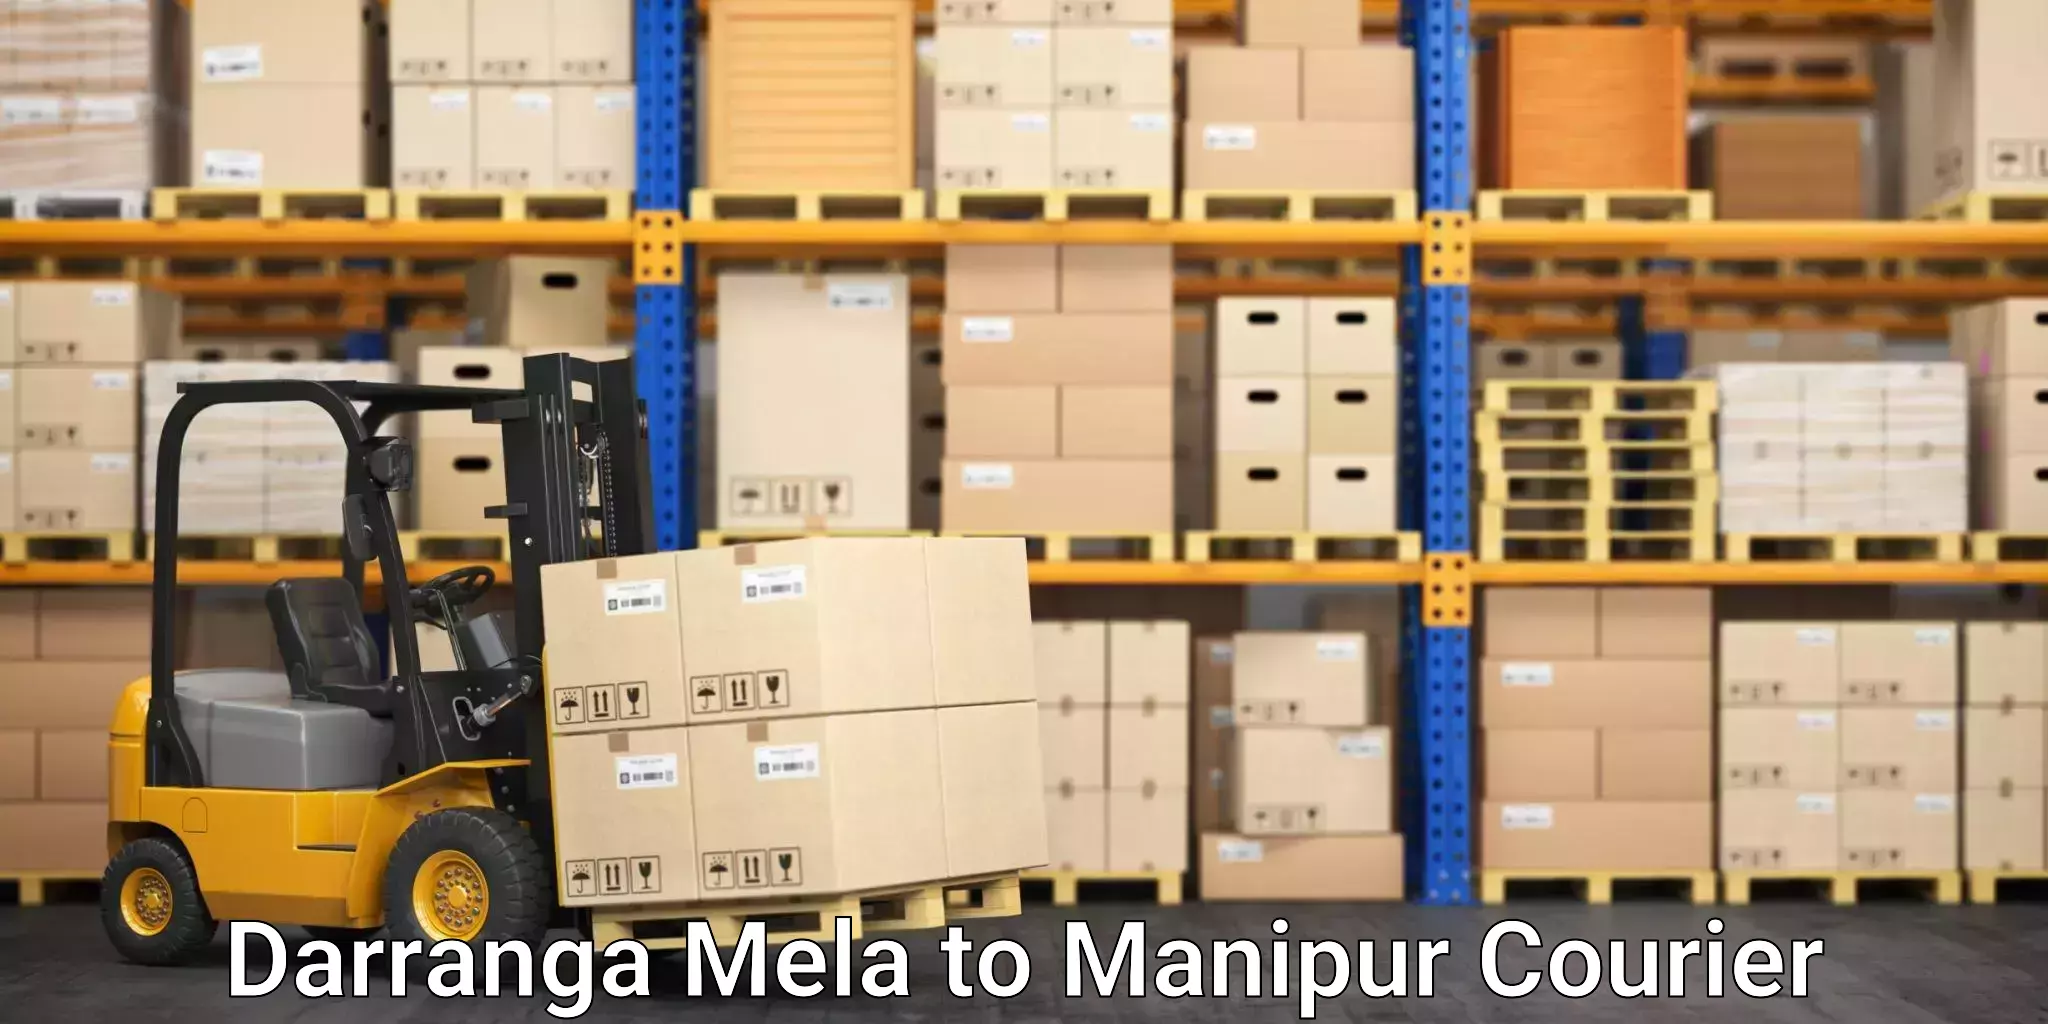 Delivery service partnership in Darranga Mela to Kaptipada